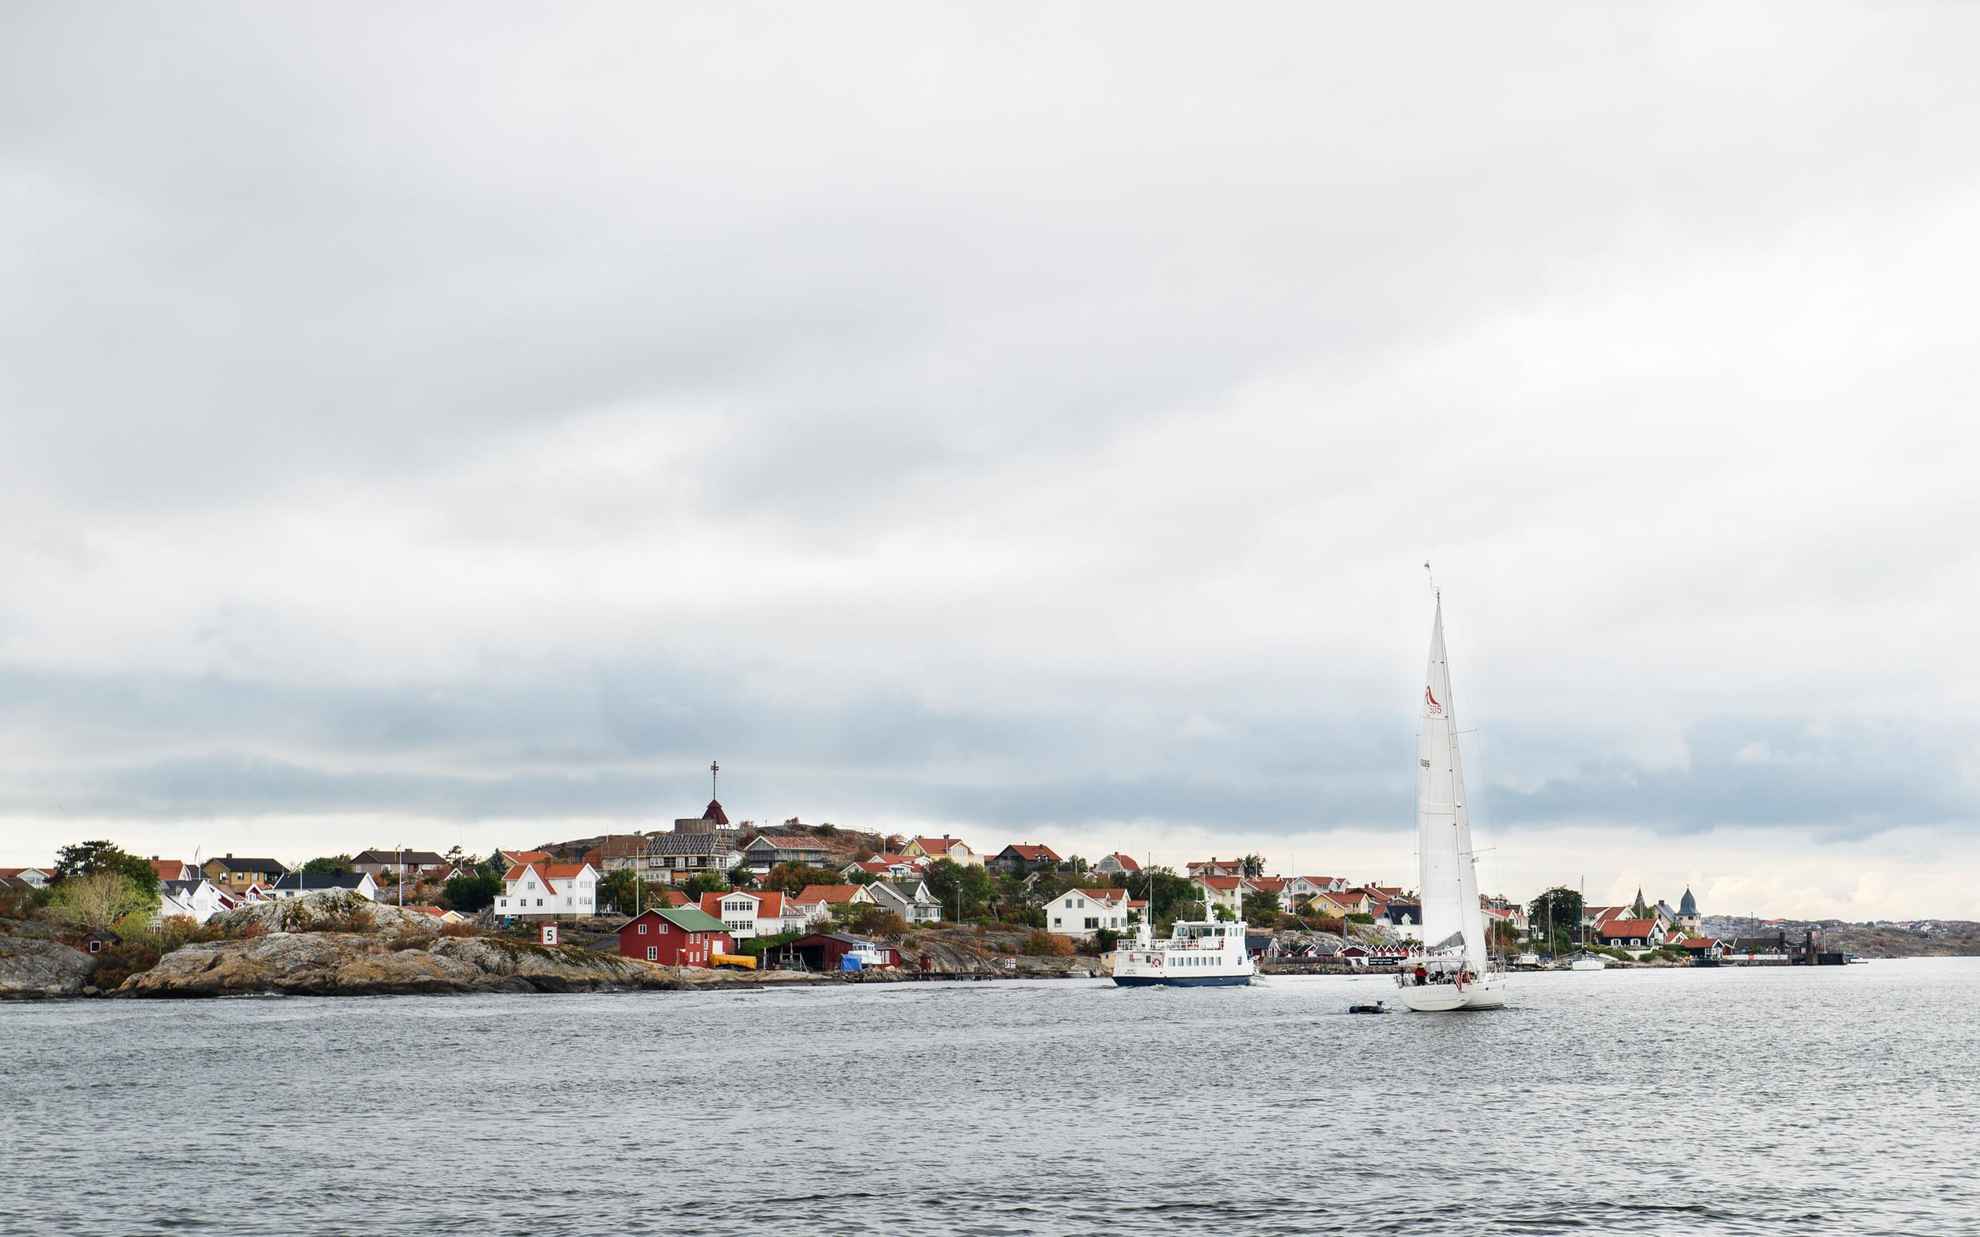 Un petit ferry et un voilier en mer, passant au large d'une île avec de nombreuses maisons à l'extérieur de Göteborg.